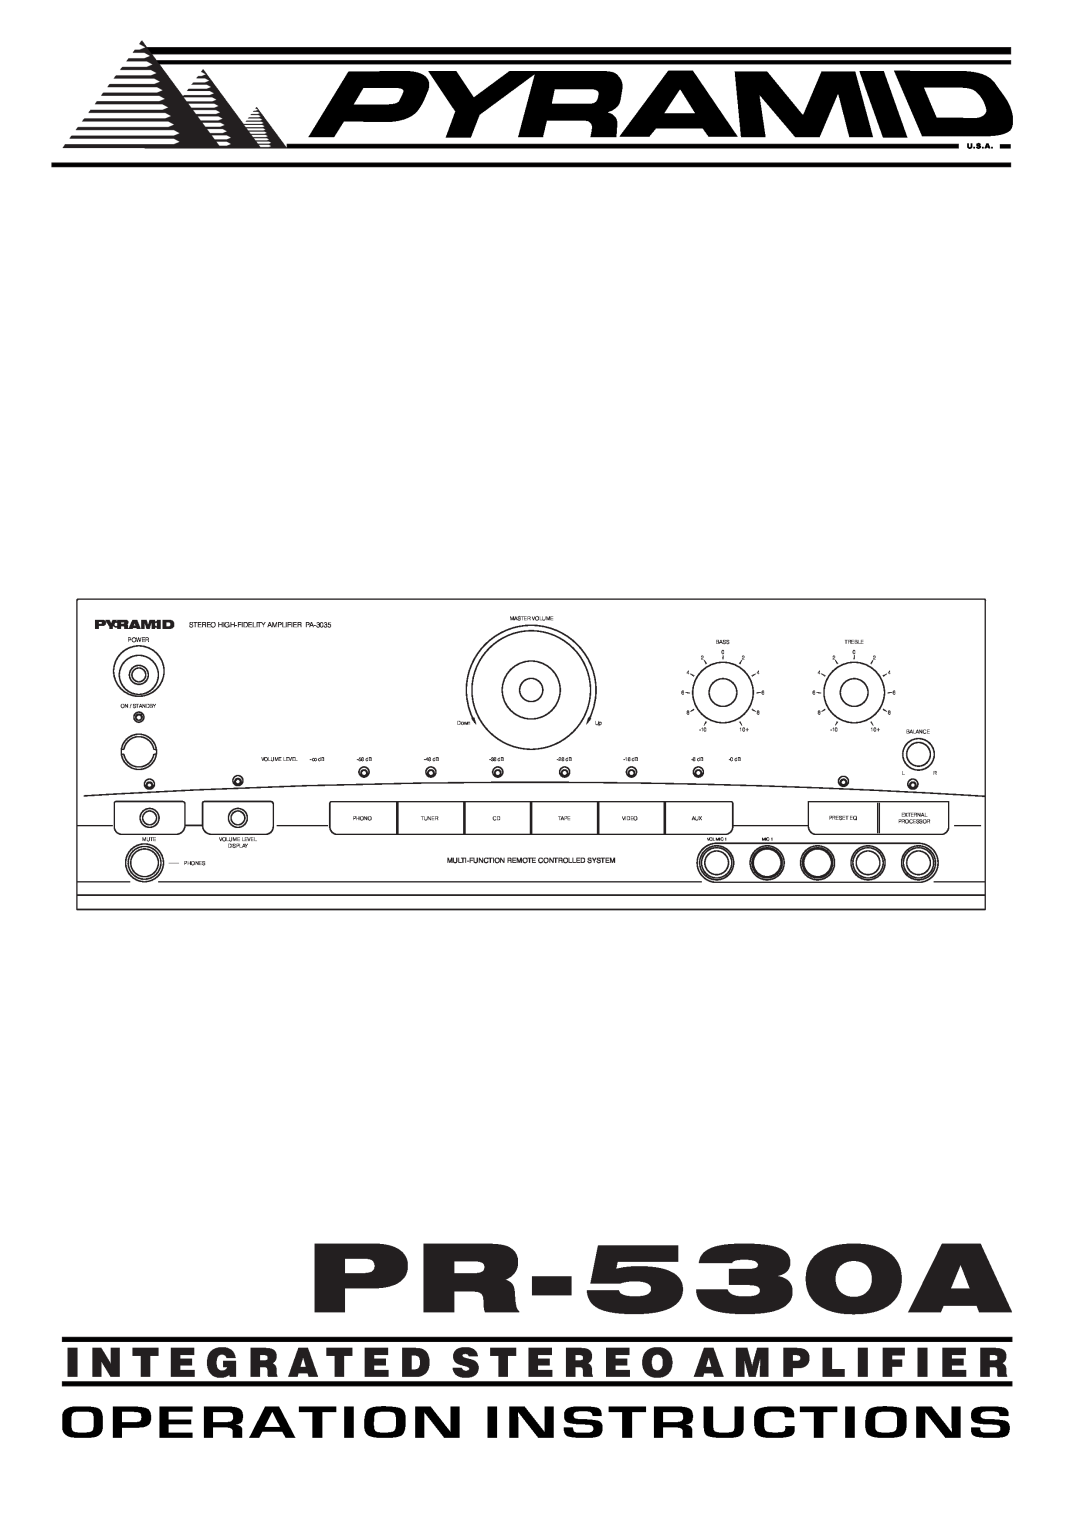 Pyramid Car Audio PR530A manual PR-530A, I N T E G R A T E D S T E R E O A M P L I F I E R, Pyramid, U.S.A 